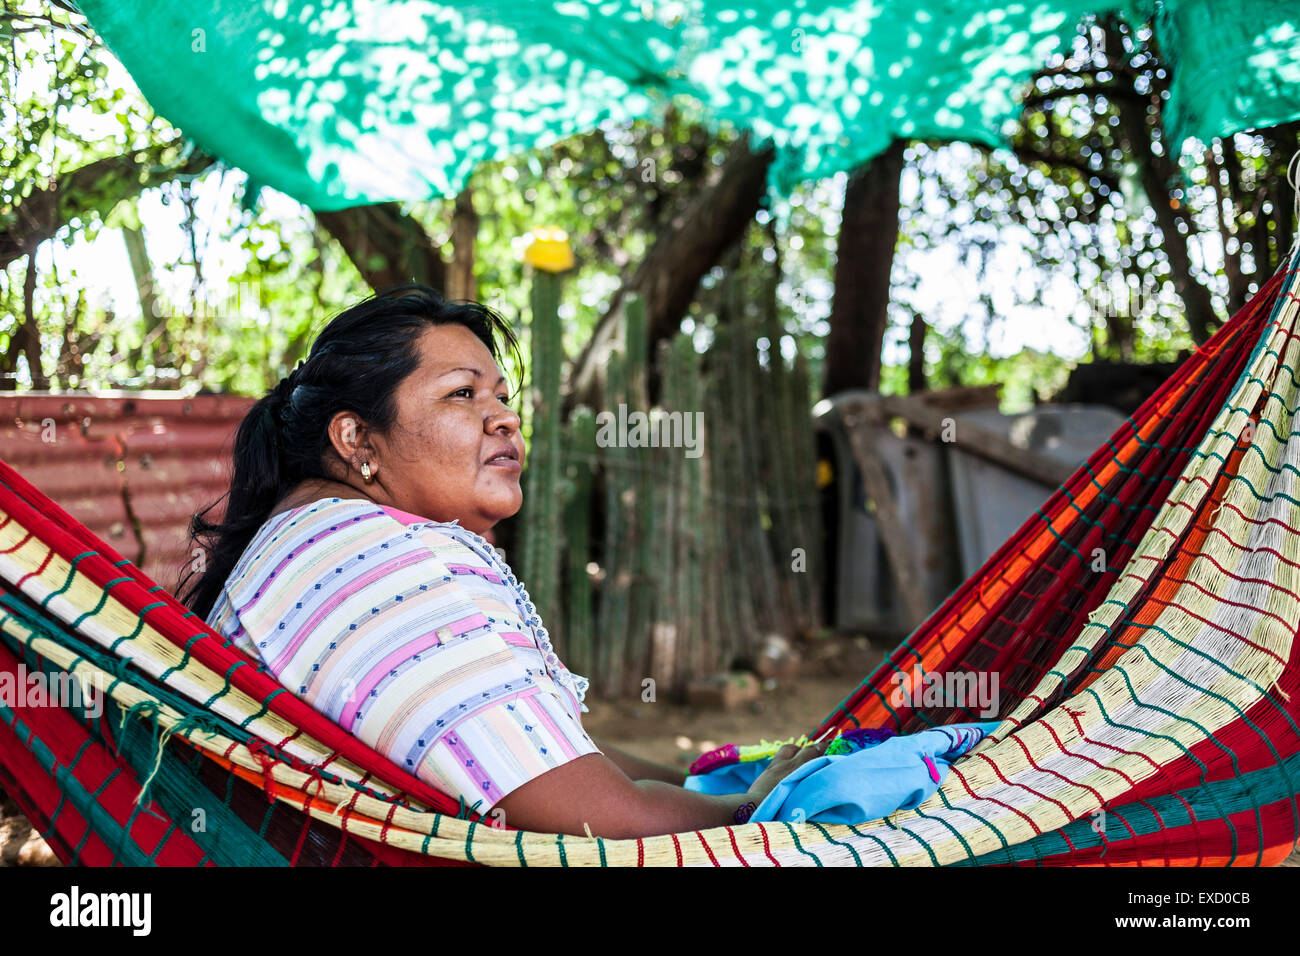 Frau mittleren Alters Wayuu indigenen stricken in einem "Chinchorro" oder  kolumbianischen Hängematte. Stricken, häkeln und Weben sind funda  Stockfotografie - Alamy